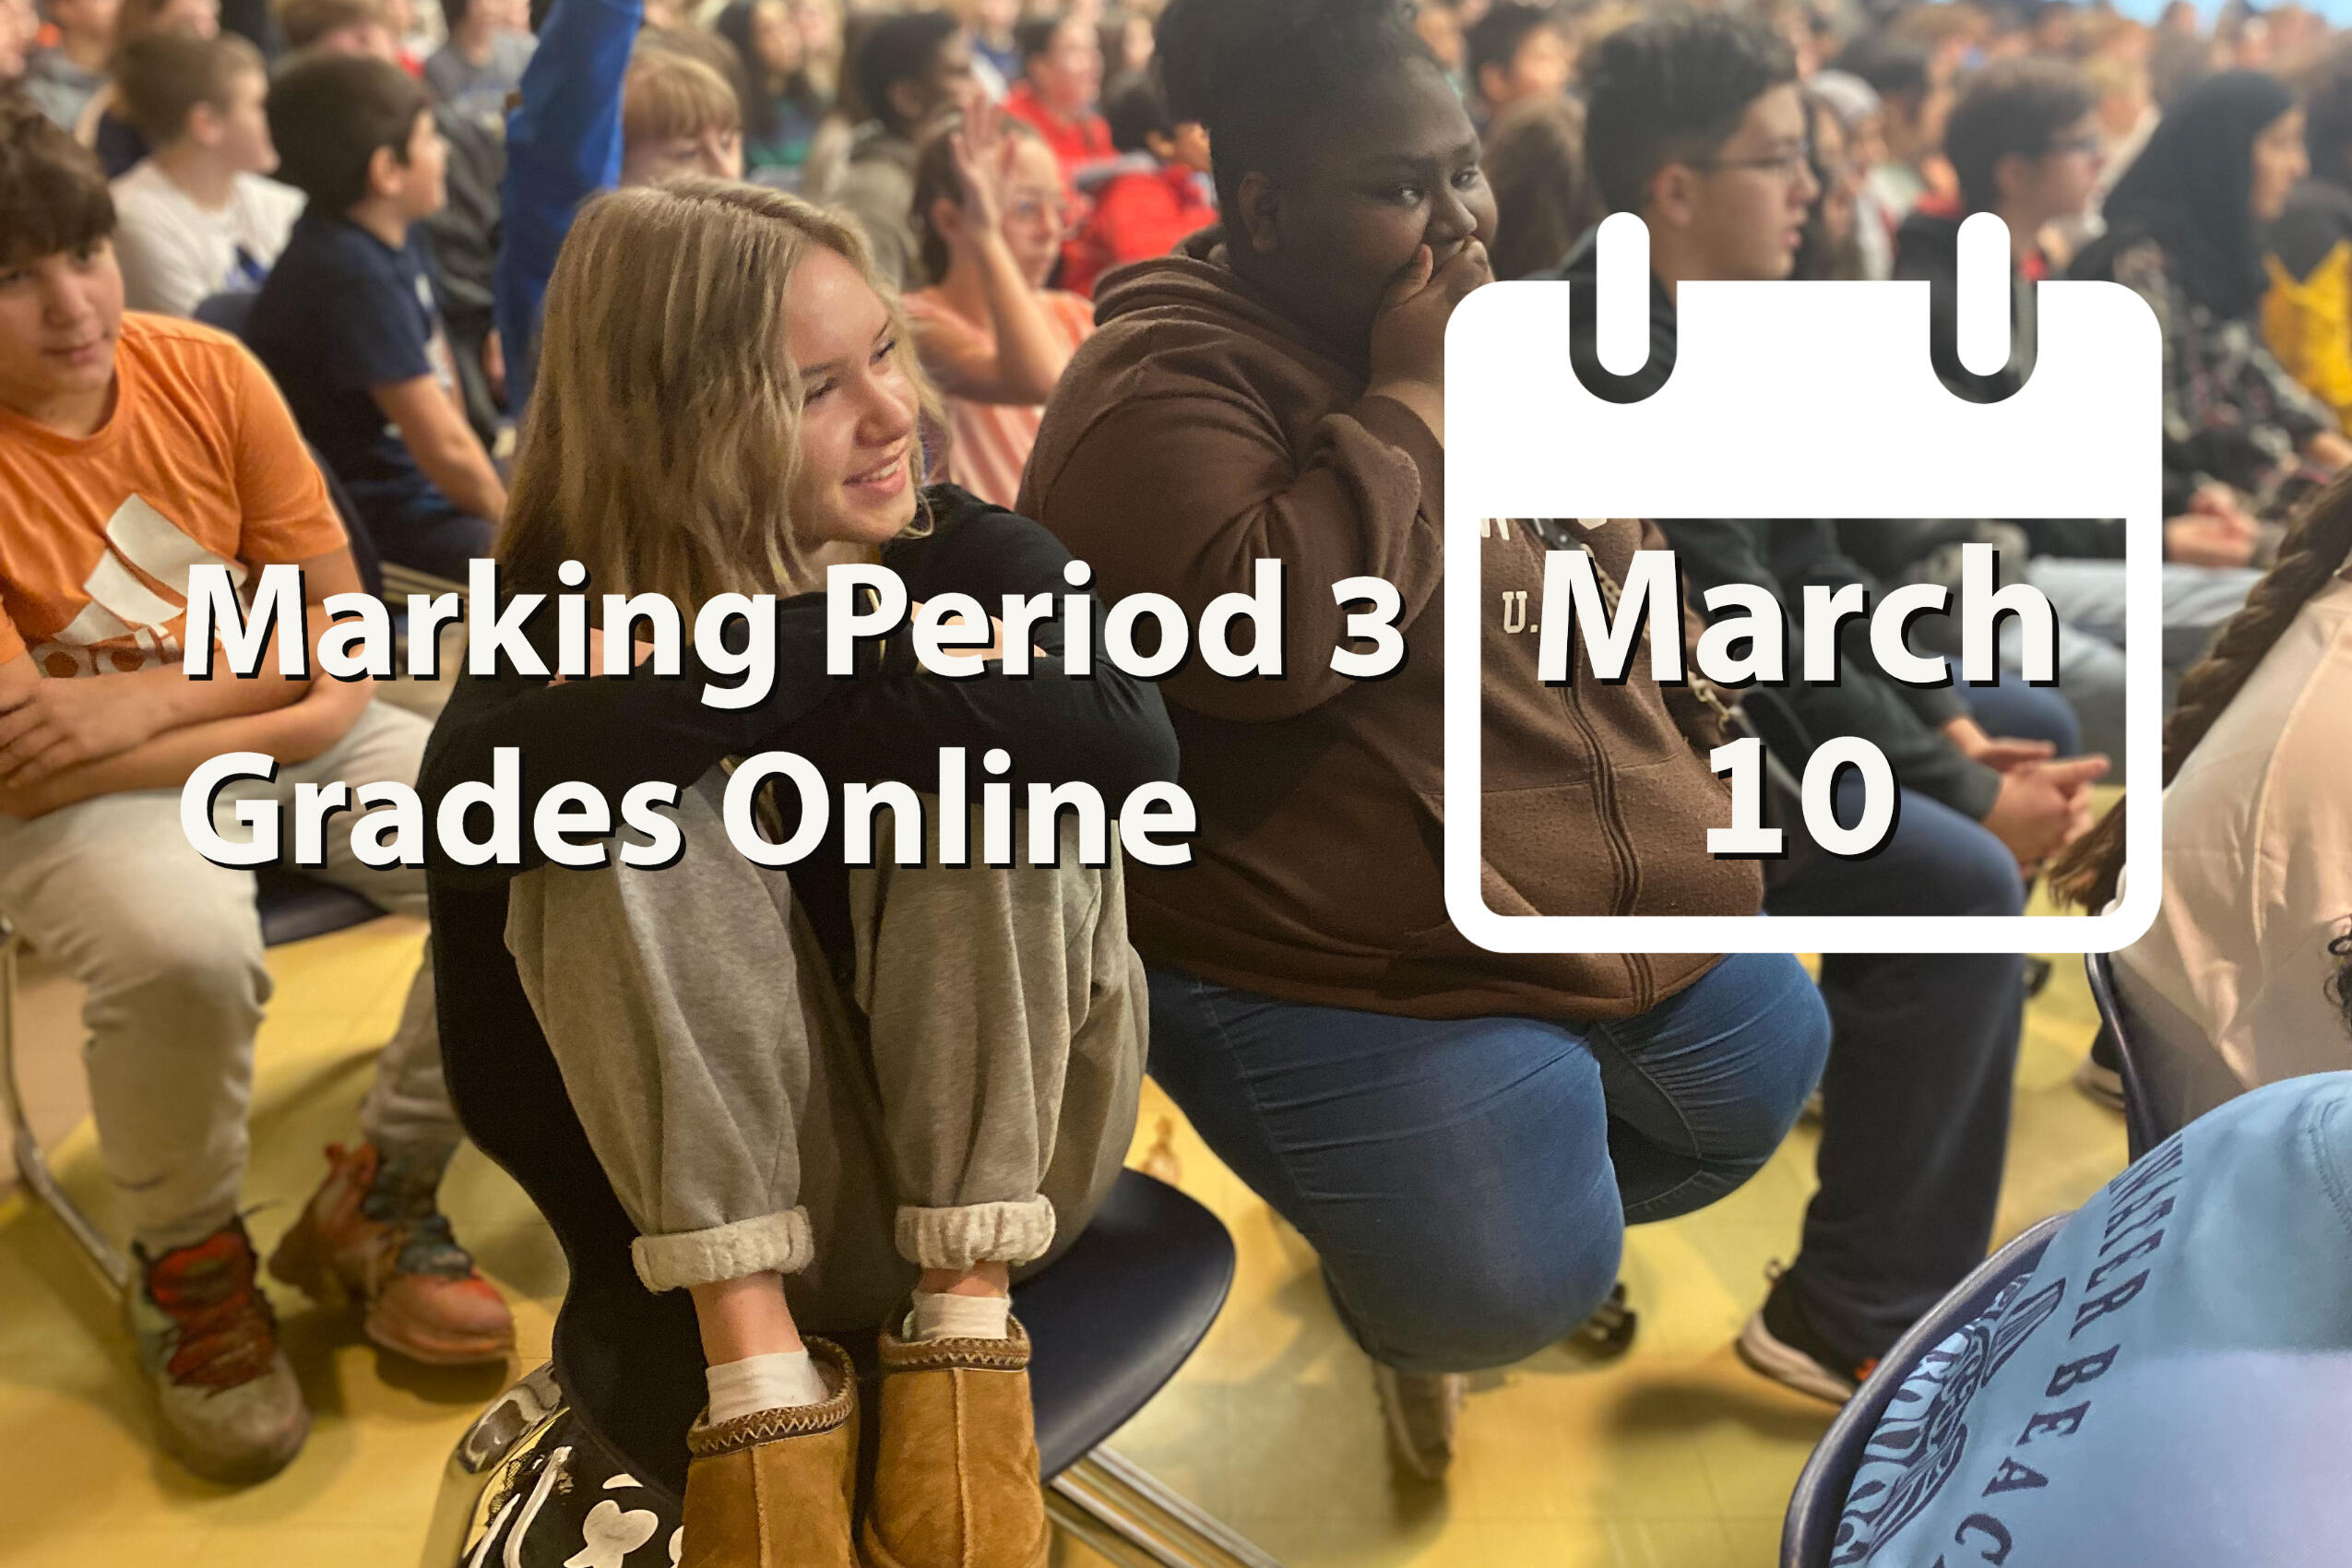 Marking Period 3 Grades Online March 10